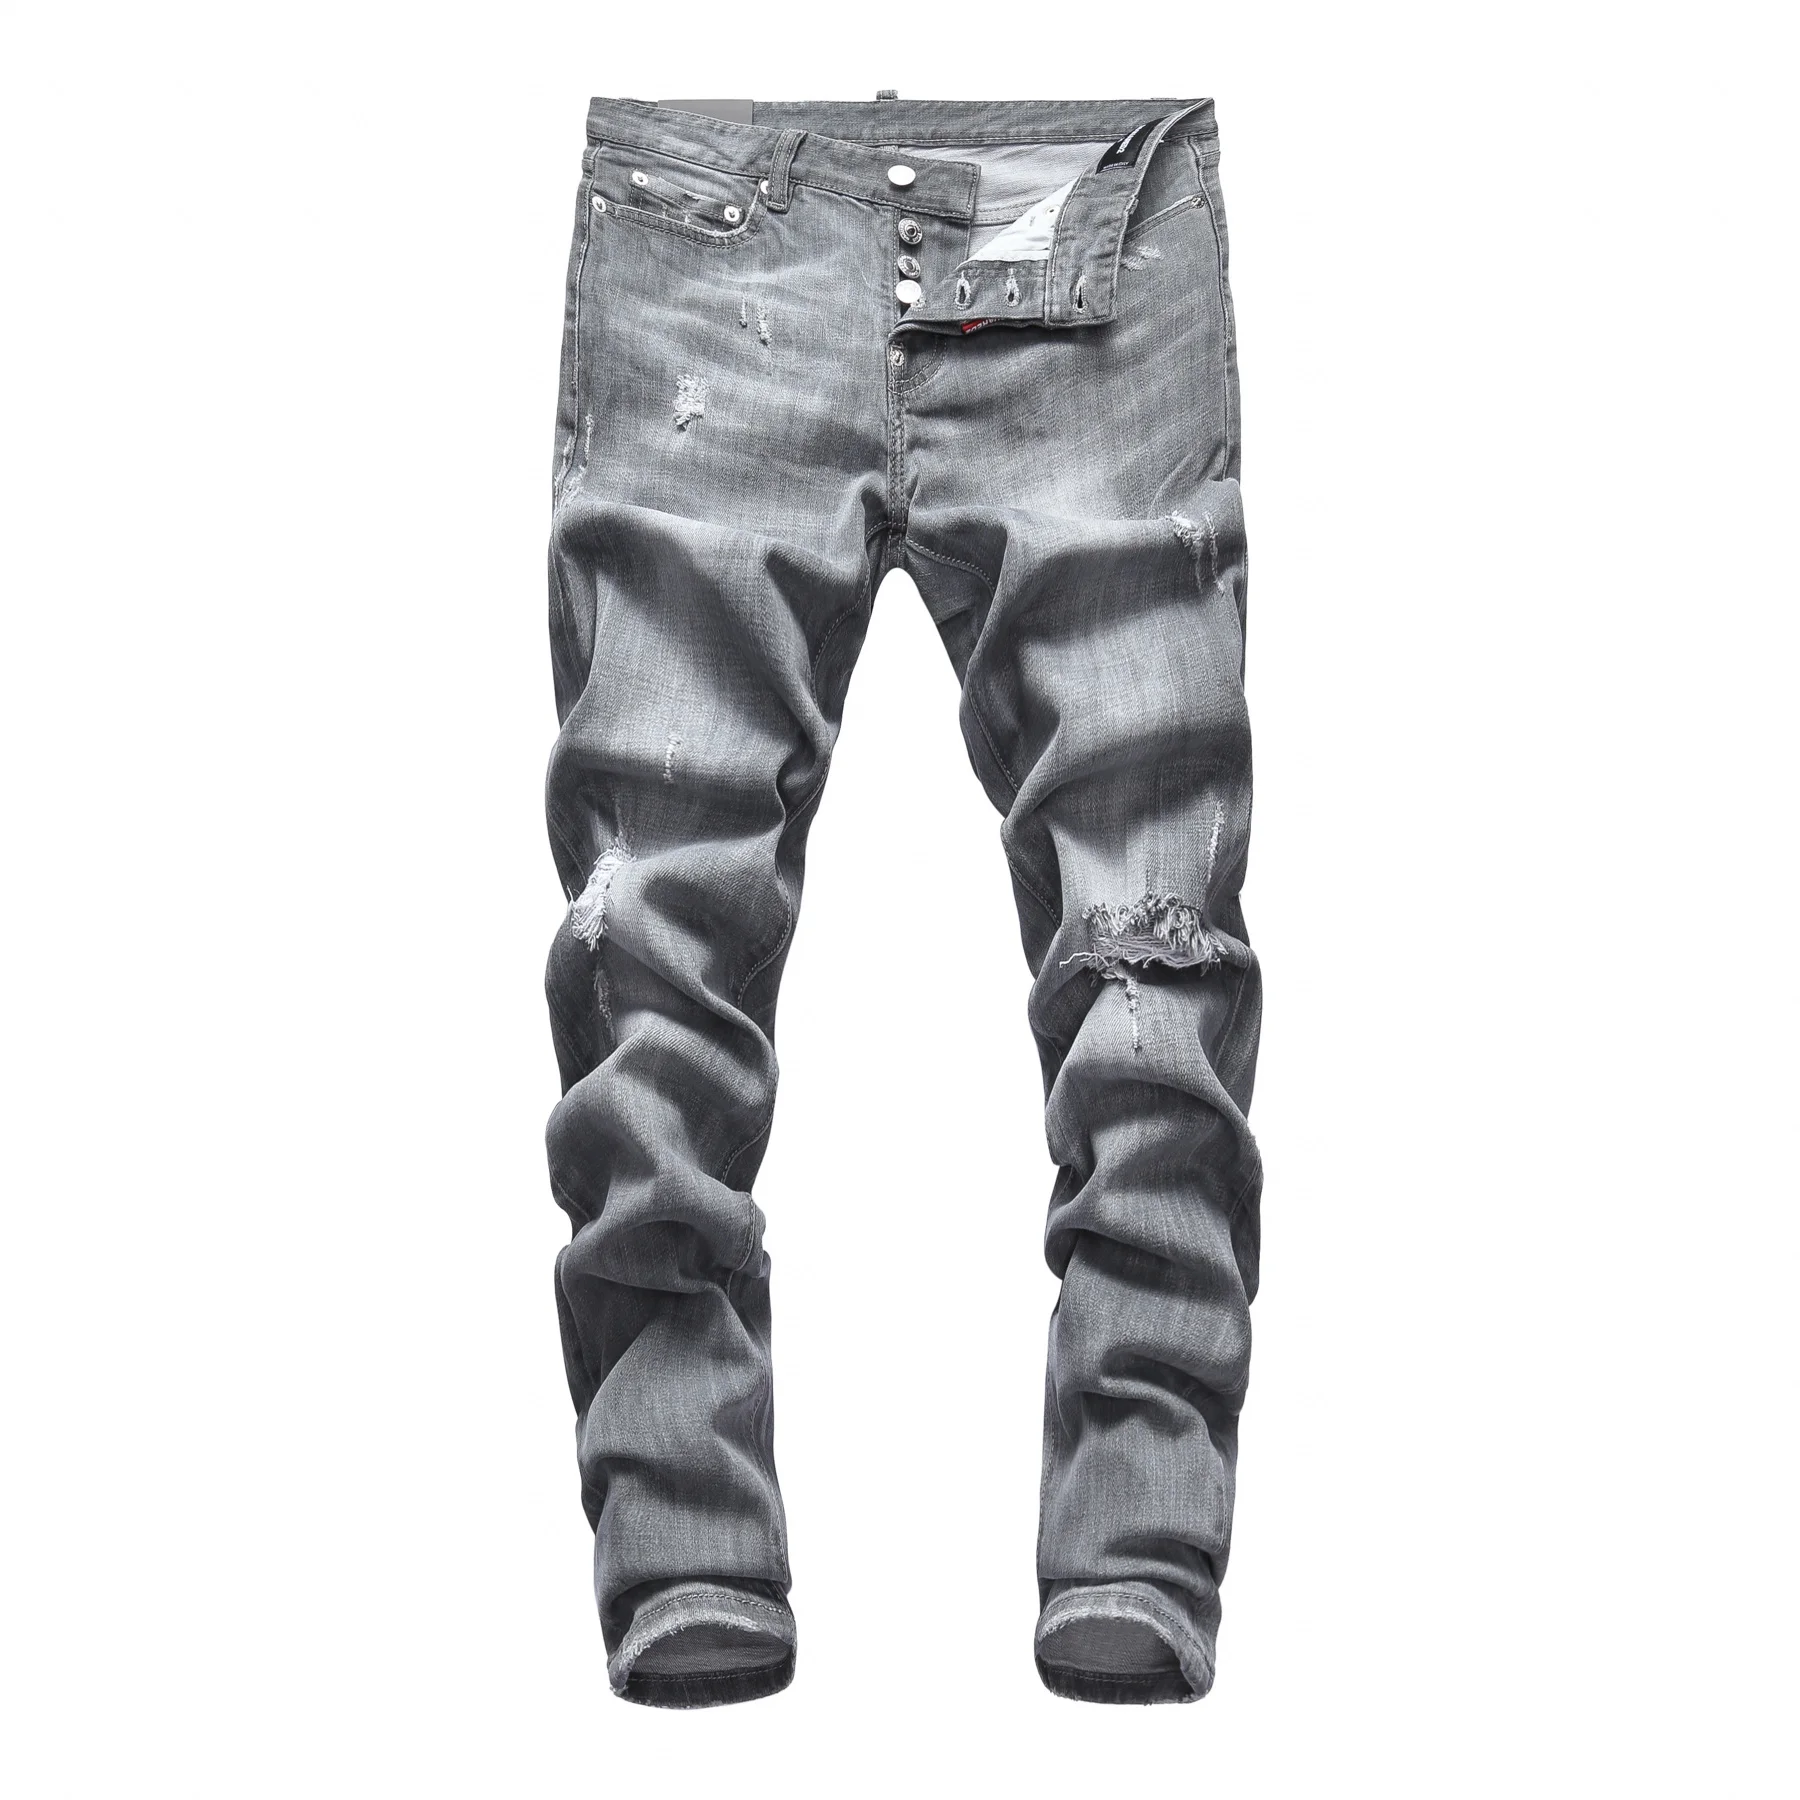 

Мужские прямые джинсы в европейском стиле, брендовые зауженные брюки из денима s dsq, на молнии с принтом с синими отверстиями, модель D2, 2021